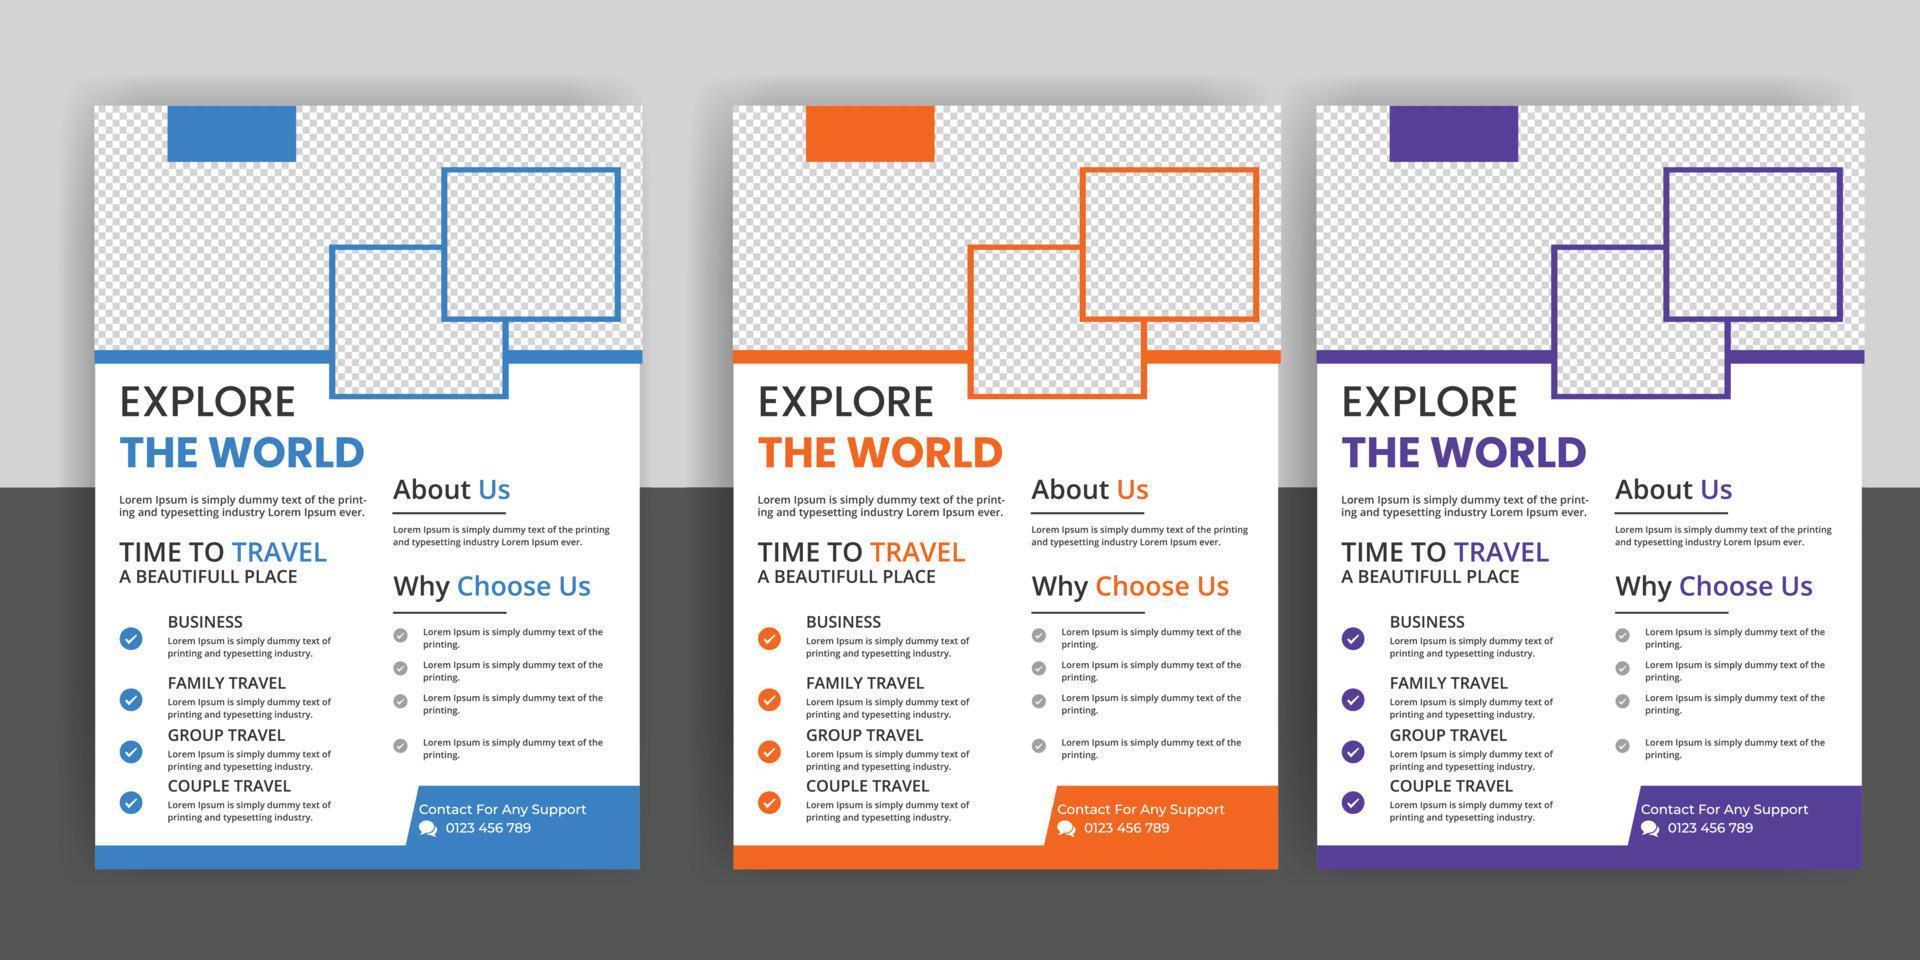 reizen folder of poster brochure ontwerp vrij downloaden vector